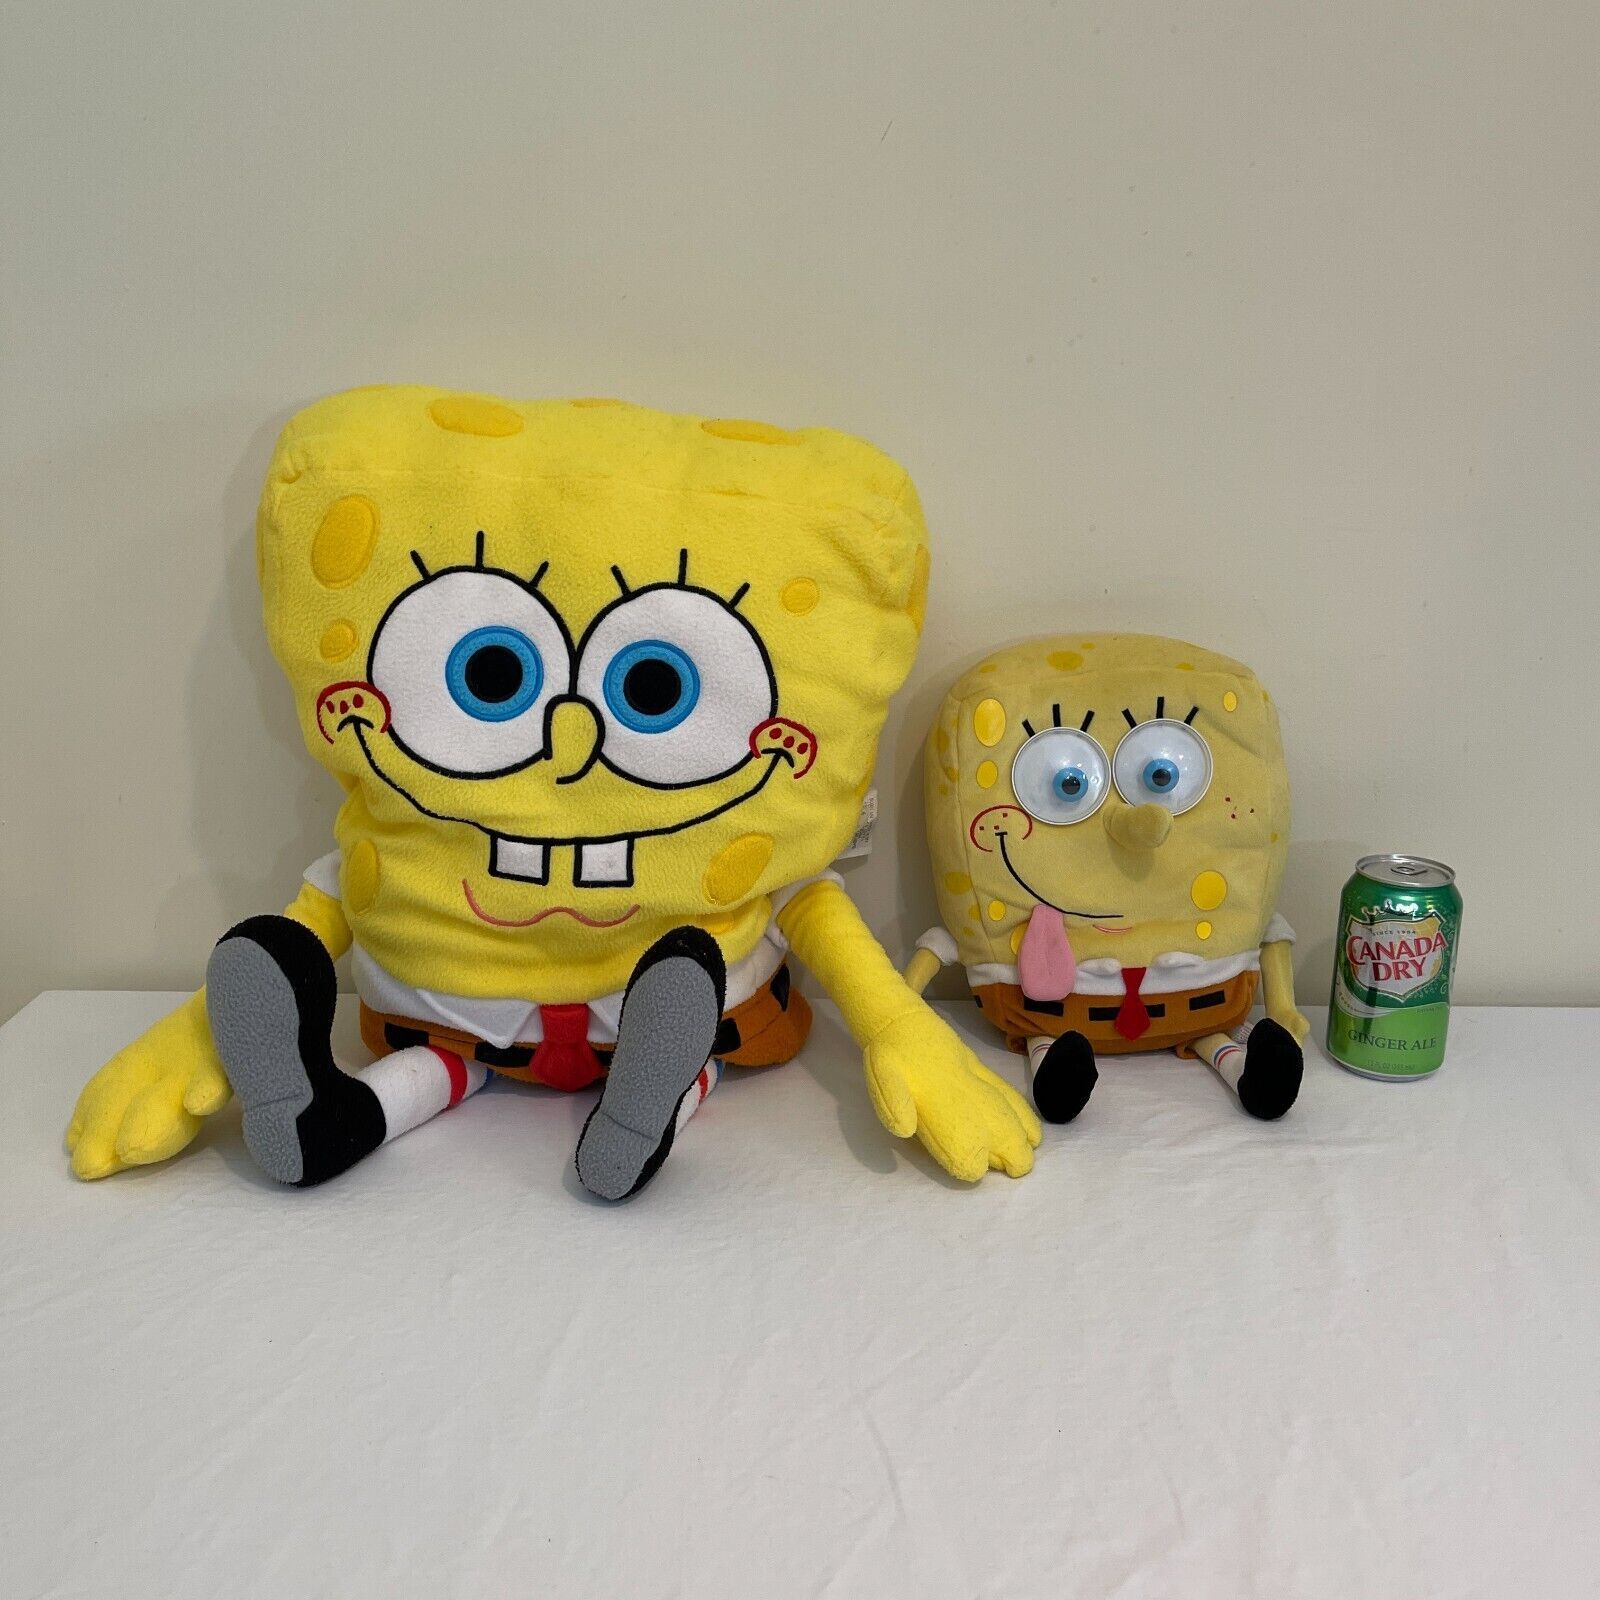 Spongebob Squarepants Talking Plush Toy Googly Springs Eyes 2008 Nickelodeon LOT - $35.99